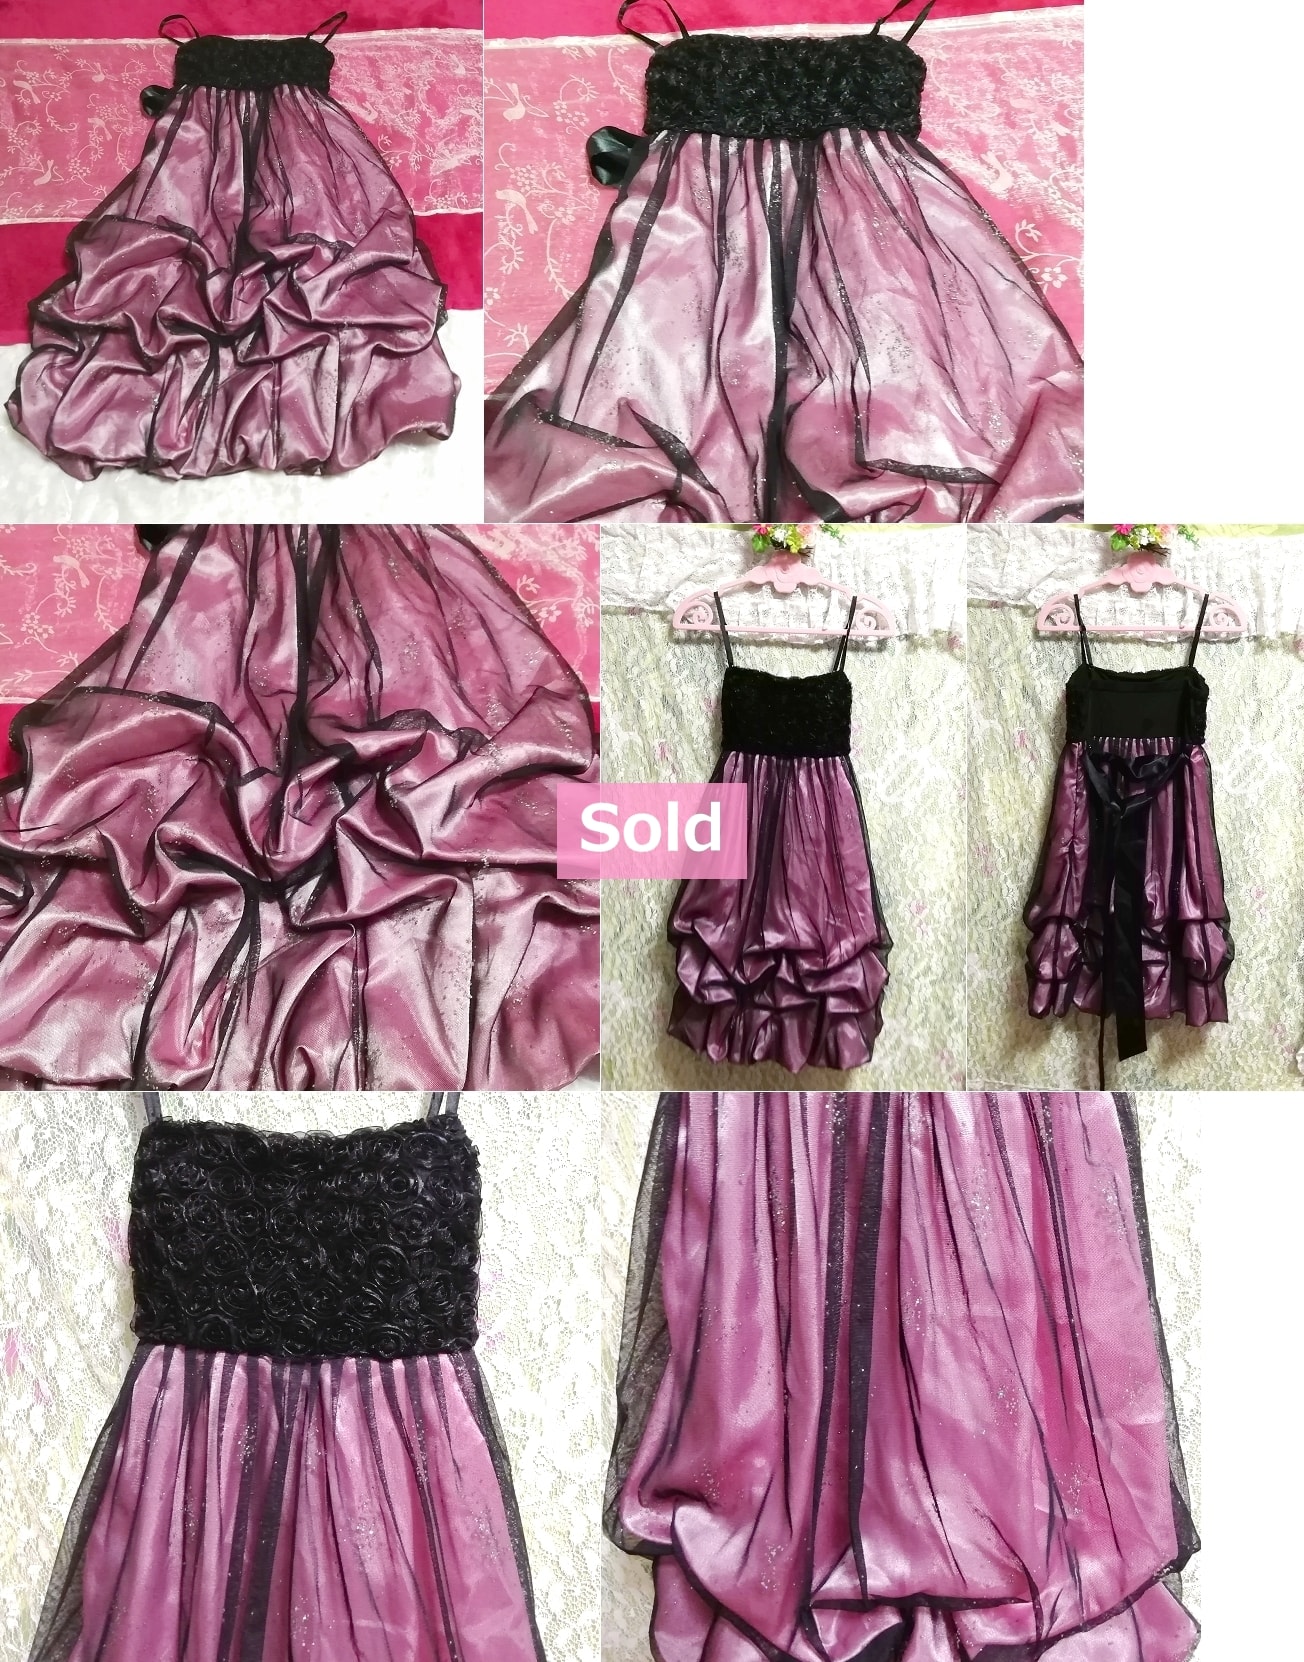 紫パープル黒トップスレースキャミソールワンピースドレス Purple black tops lace camisole onepiece dress